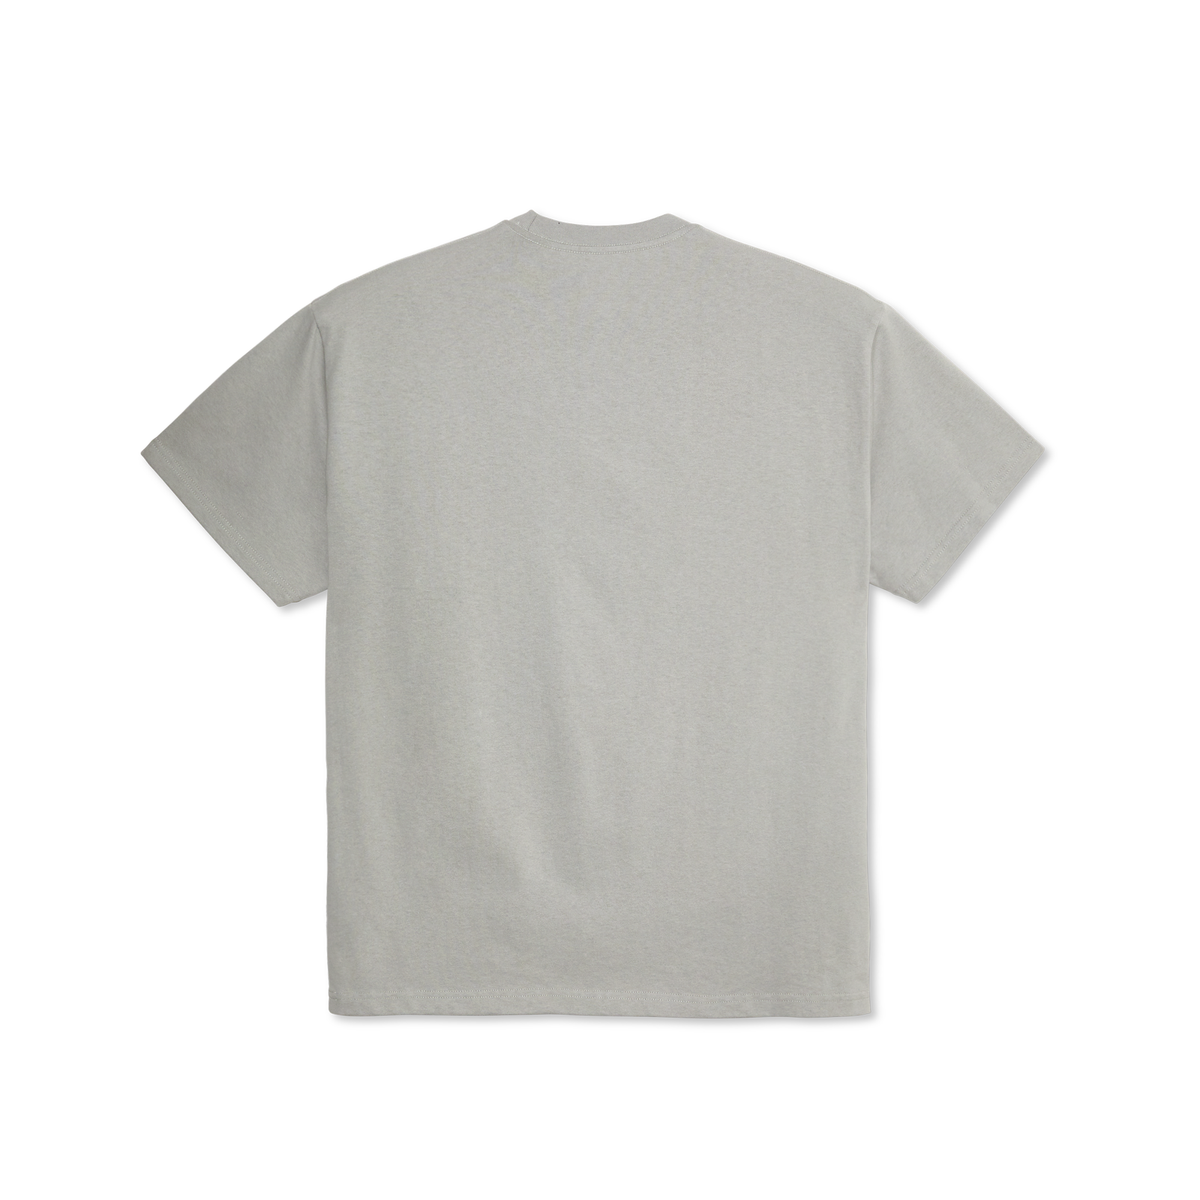 Polar Polar Skate Co Core T-Shirt | Silver Grey | The Vines